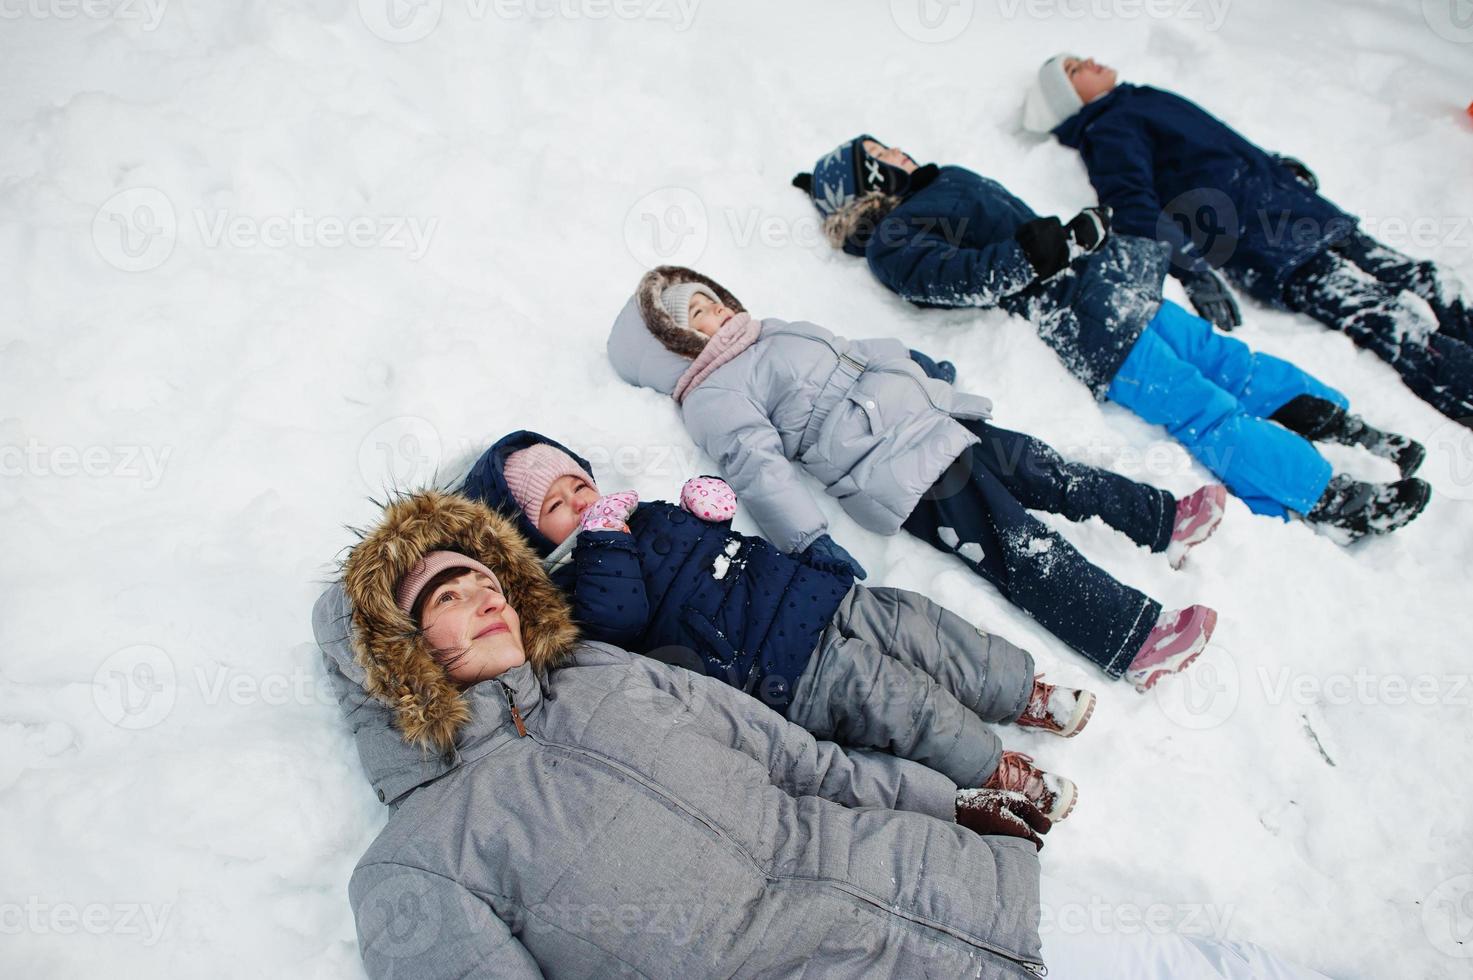 mãe com quatro filhos na natureza de inverno deitado na neve. foto